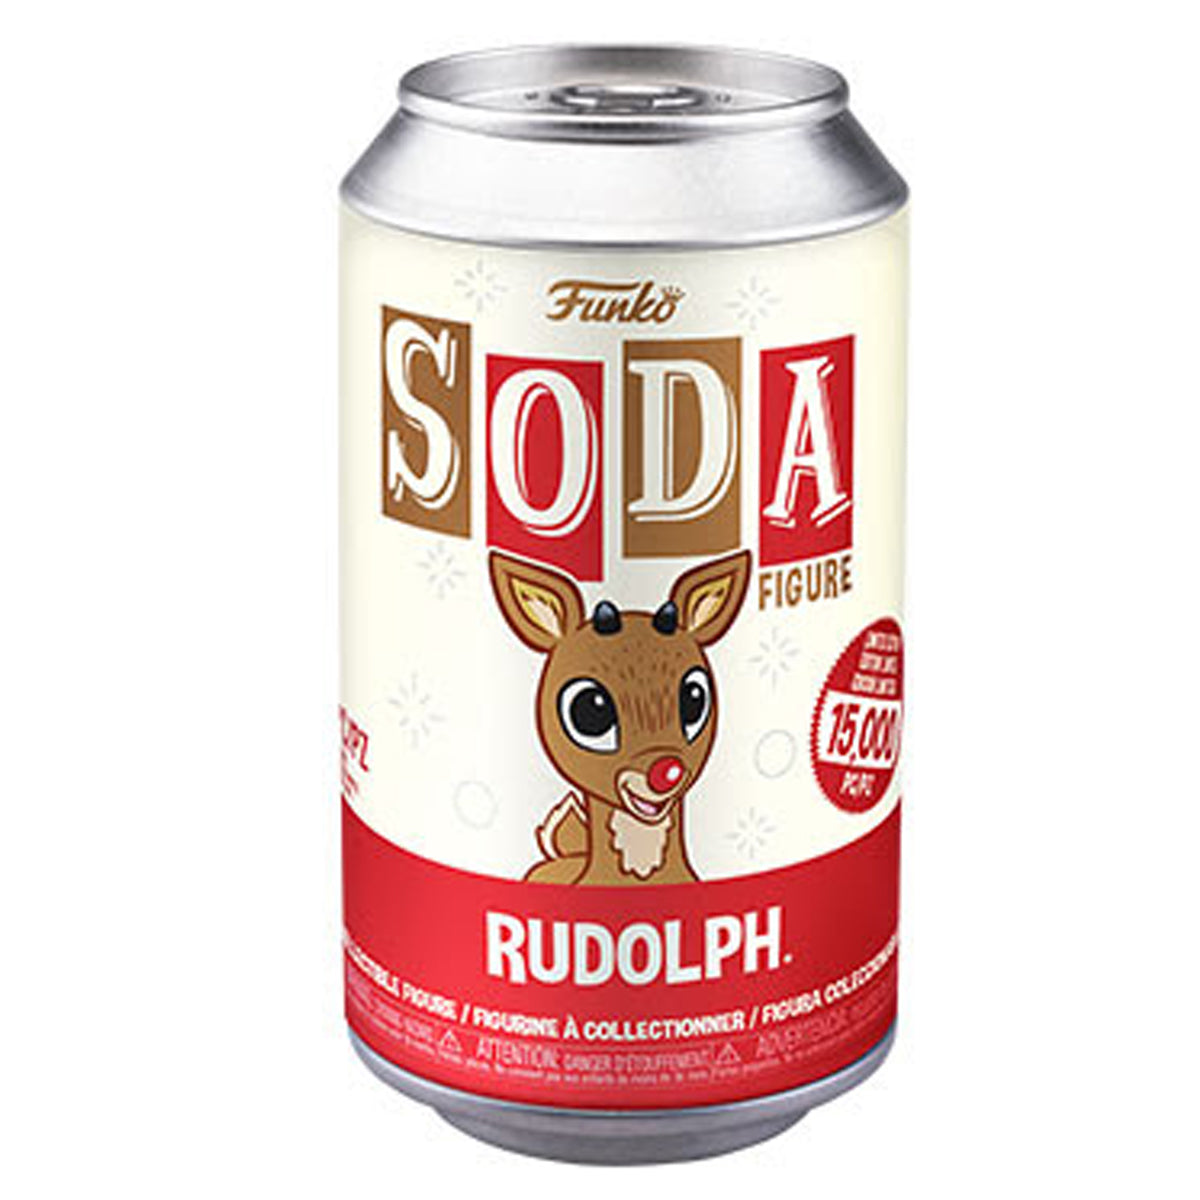 Vinyl Soda : Rudolph - Rudolph w/ Flocked Chance of Chase Funko Soda